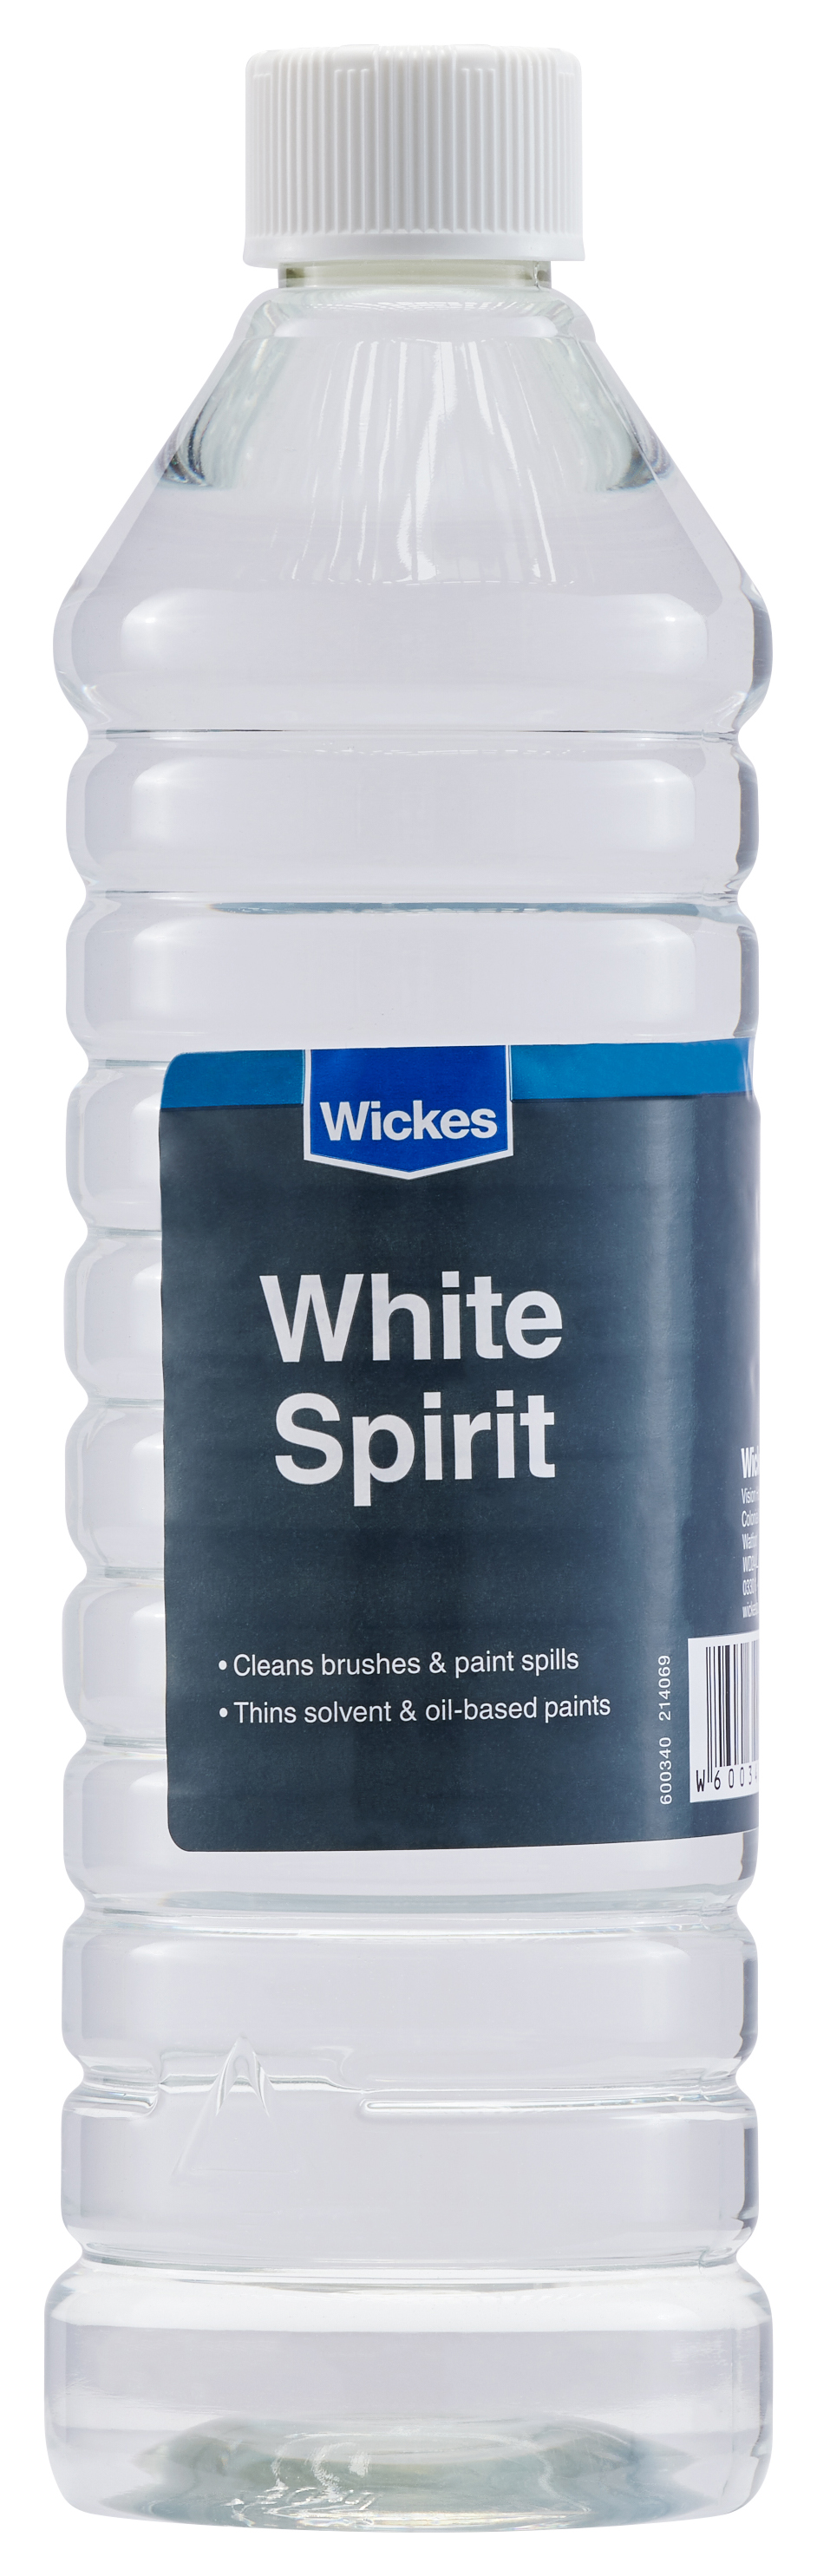 Wickes White Spirit - 750ml